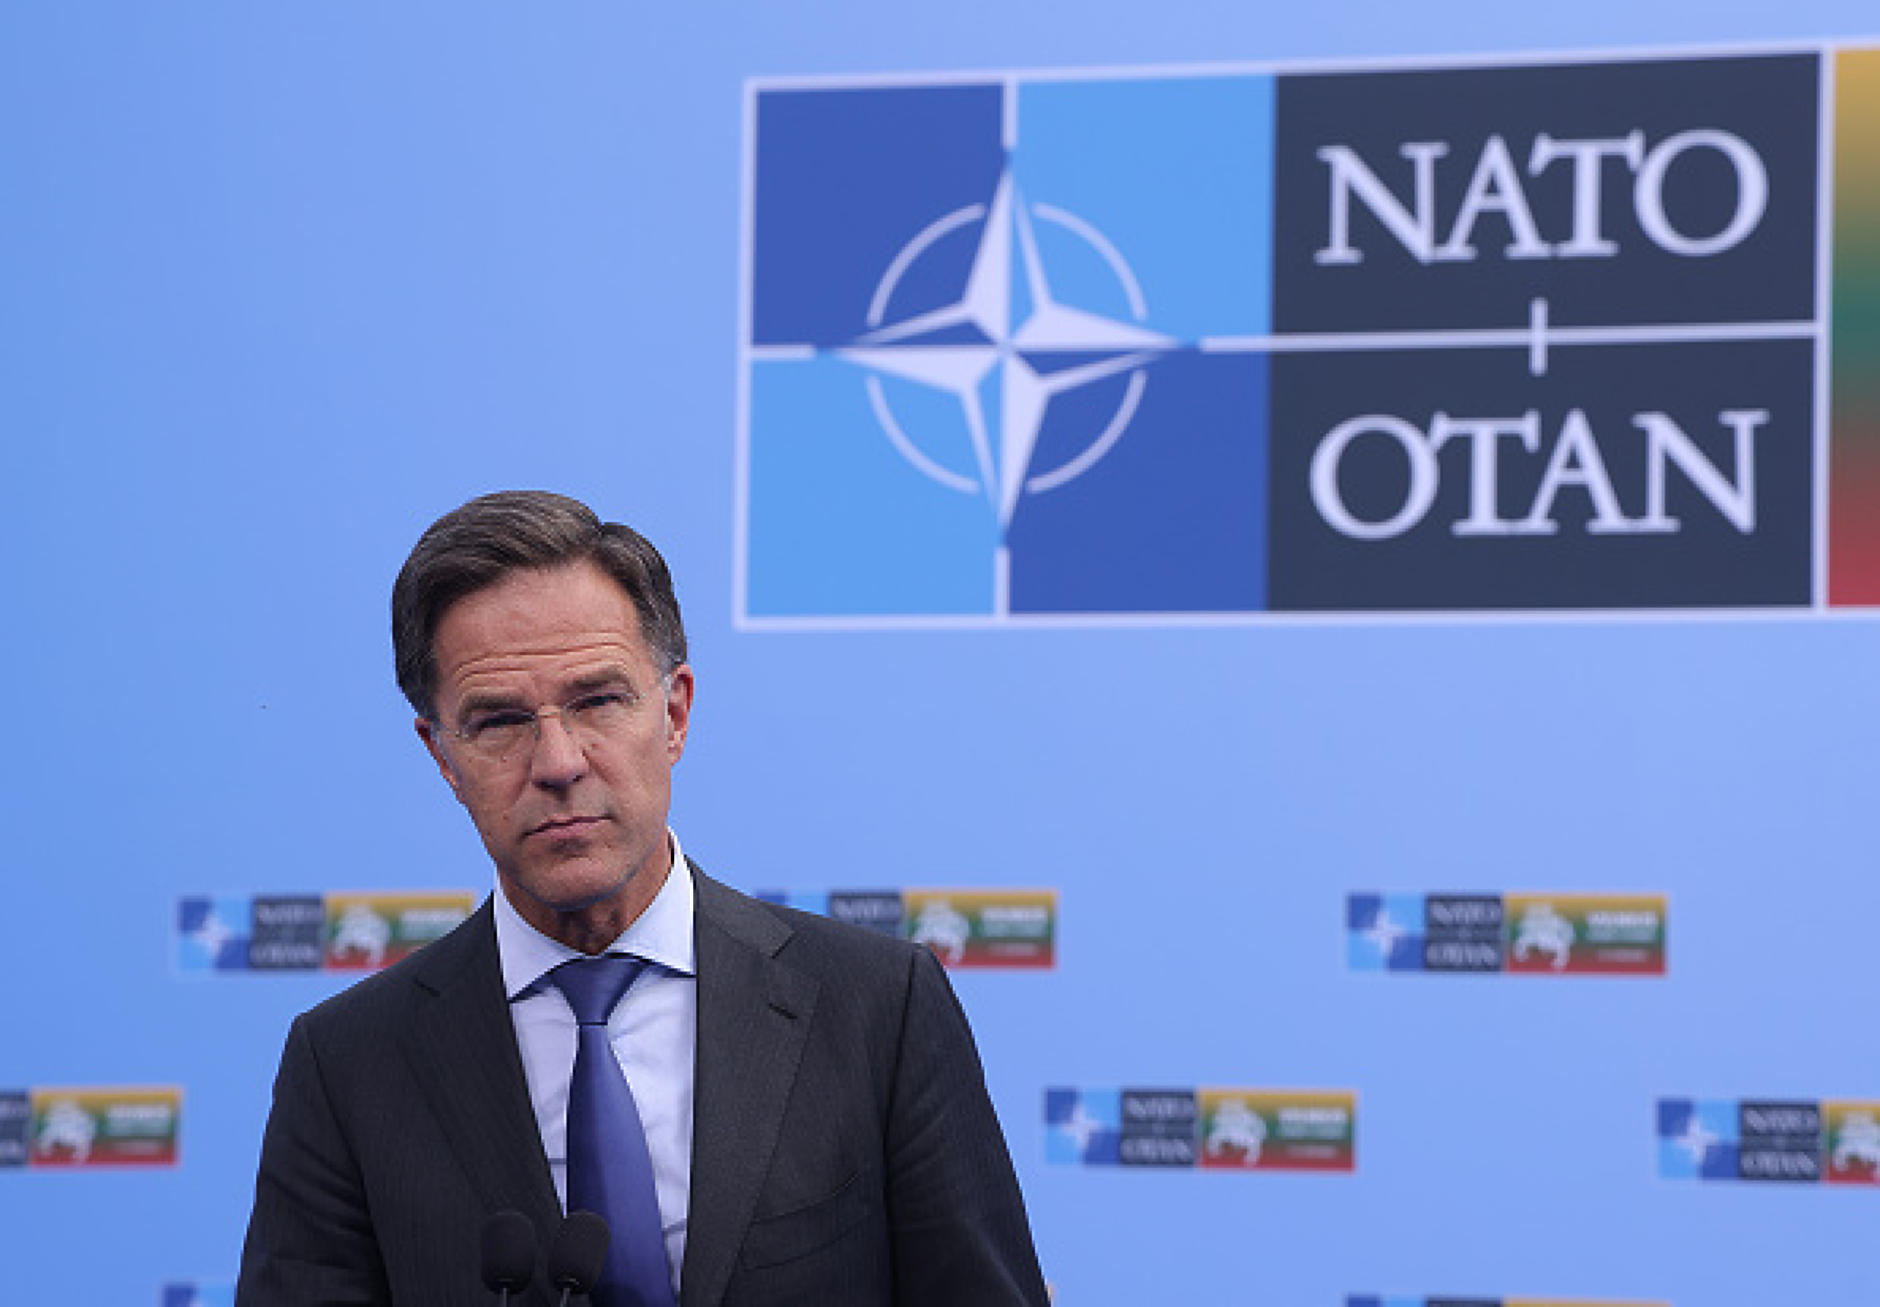  Марк Рюте остана без конкуренция за поста шеф на НАТО